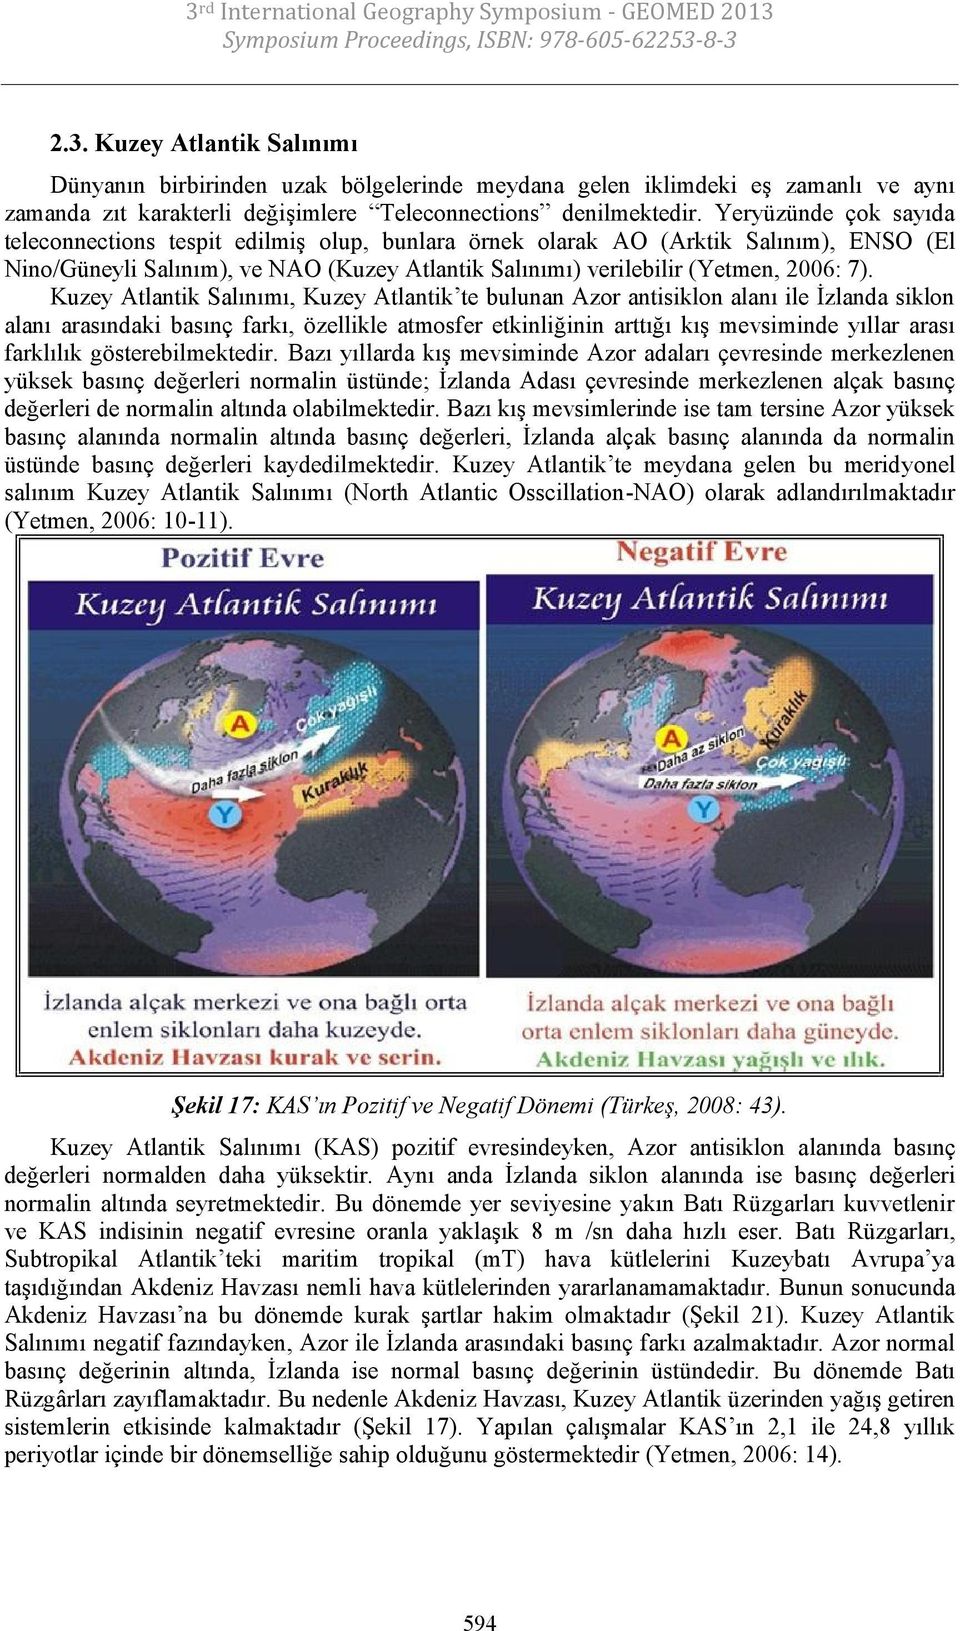 Kuzey Atlantik Salınımı, Kuzey Atlantik te bulunan Azor antisiklon alanı ile İzlanda siklon alanı arasındaki basınç farkı, özellikle atmosfer etkinliğinin arttığı kış mevsiminde yıllar arası